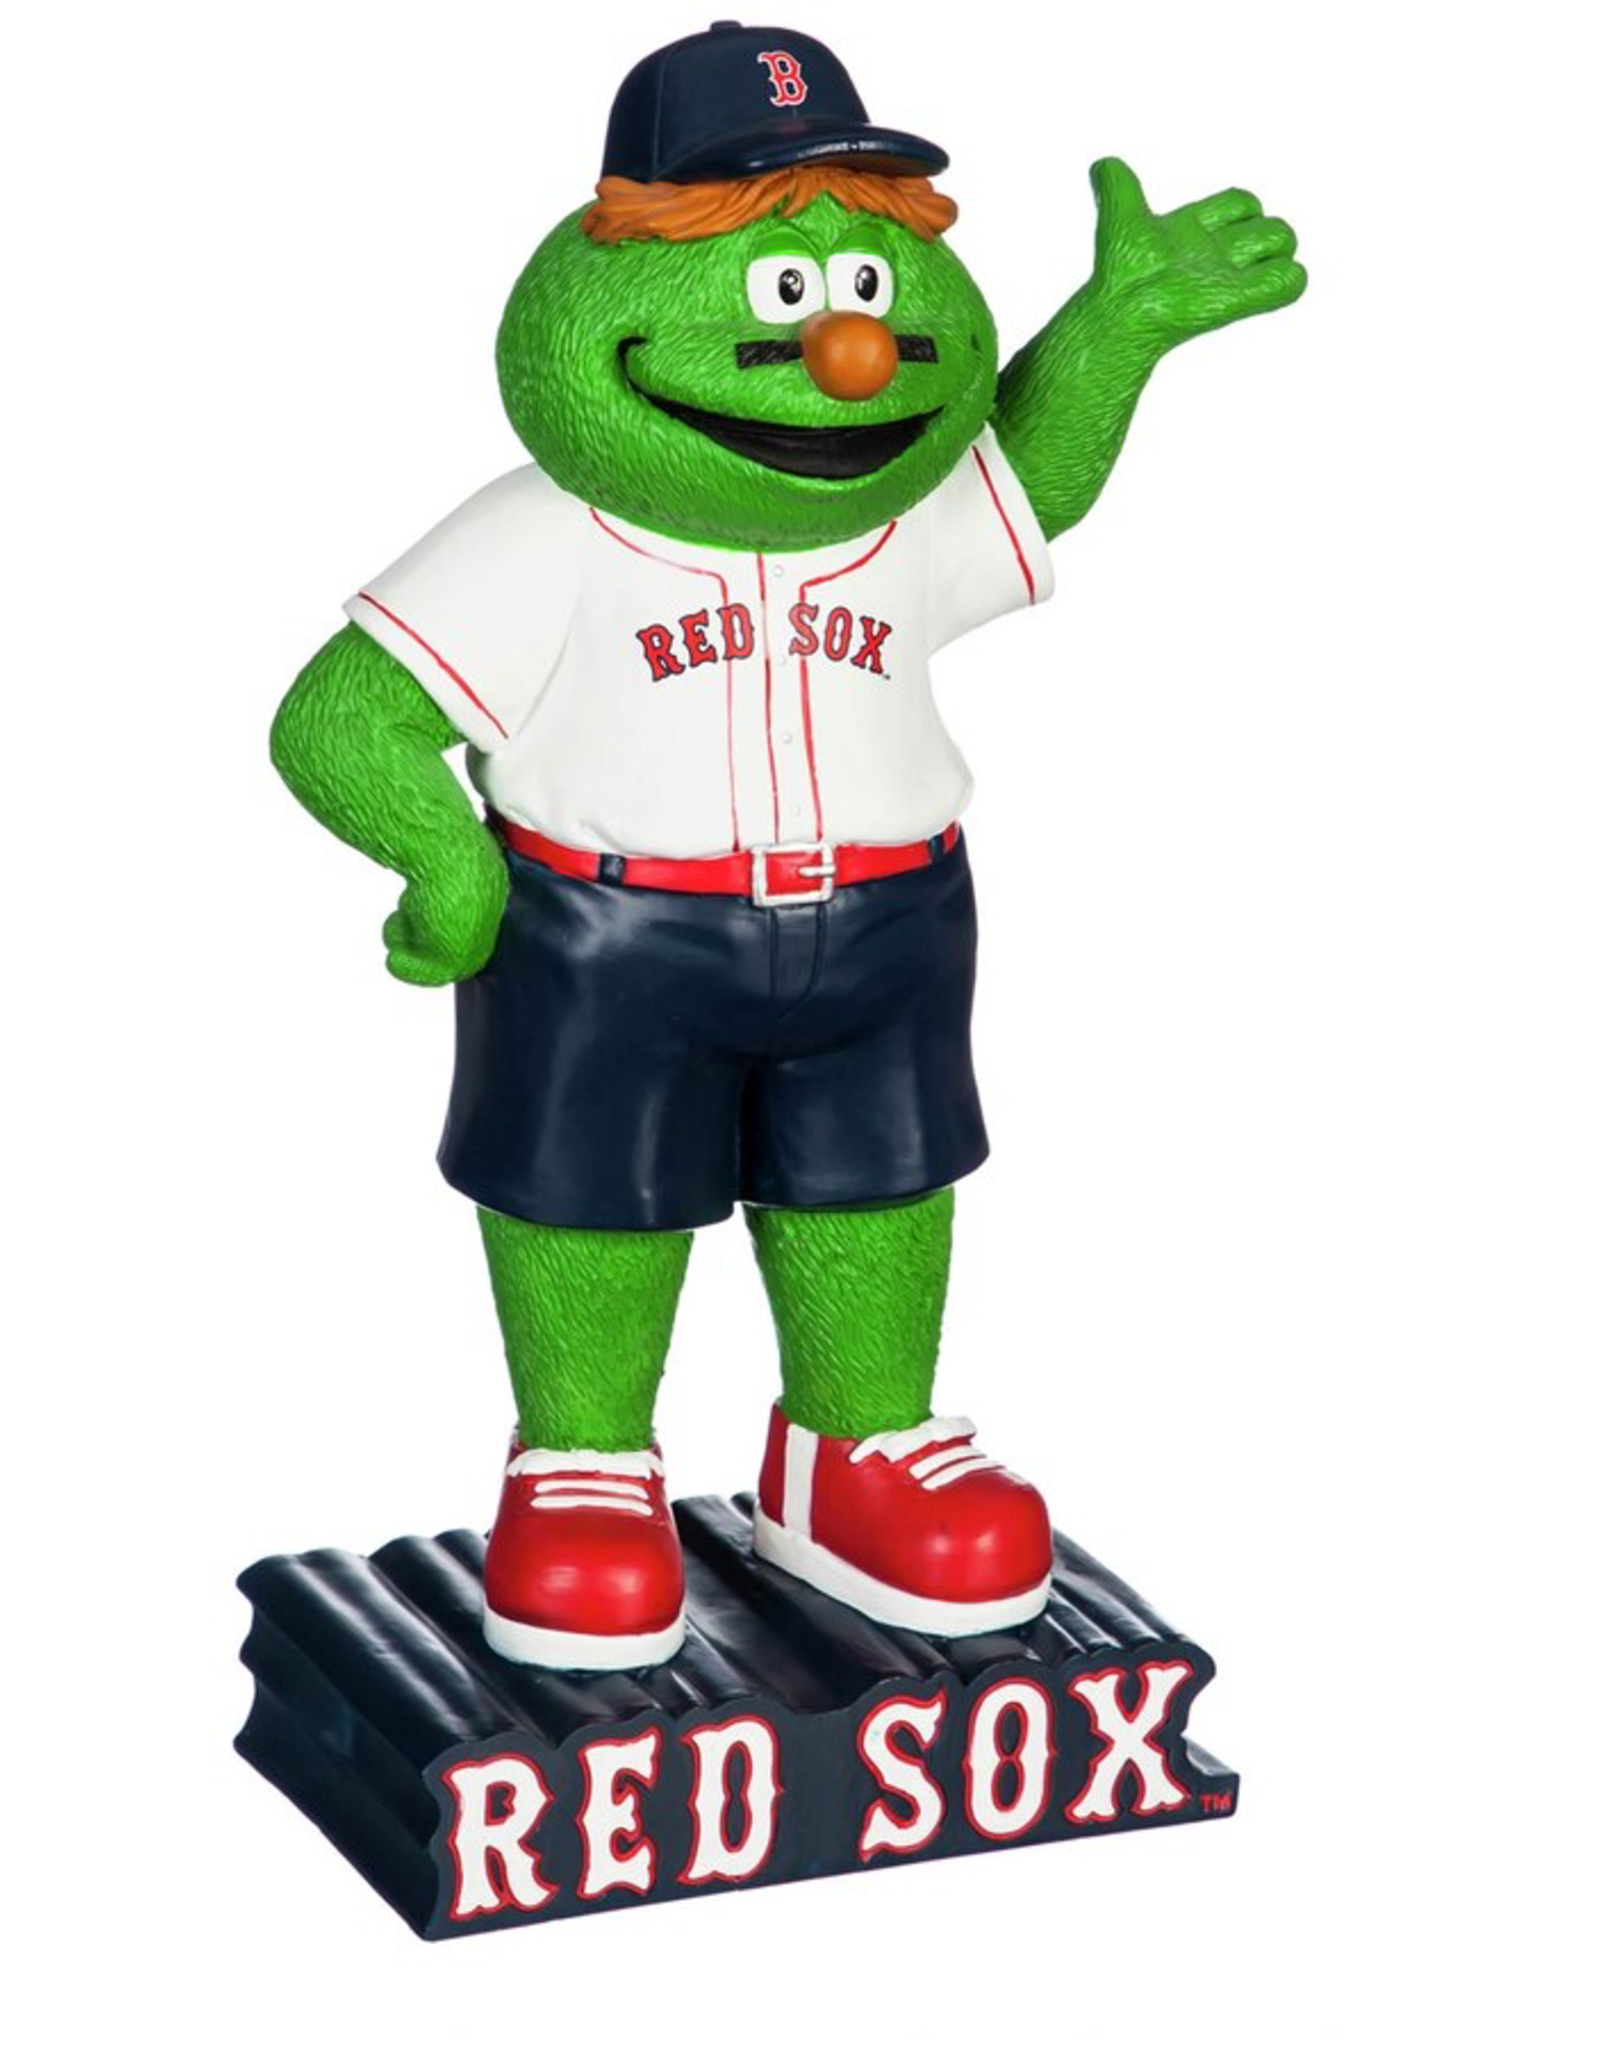 EVERGREEN Boston Red Sox Mascot Statue